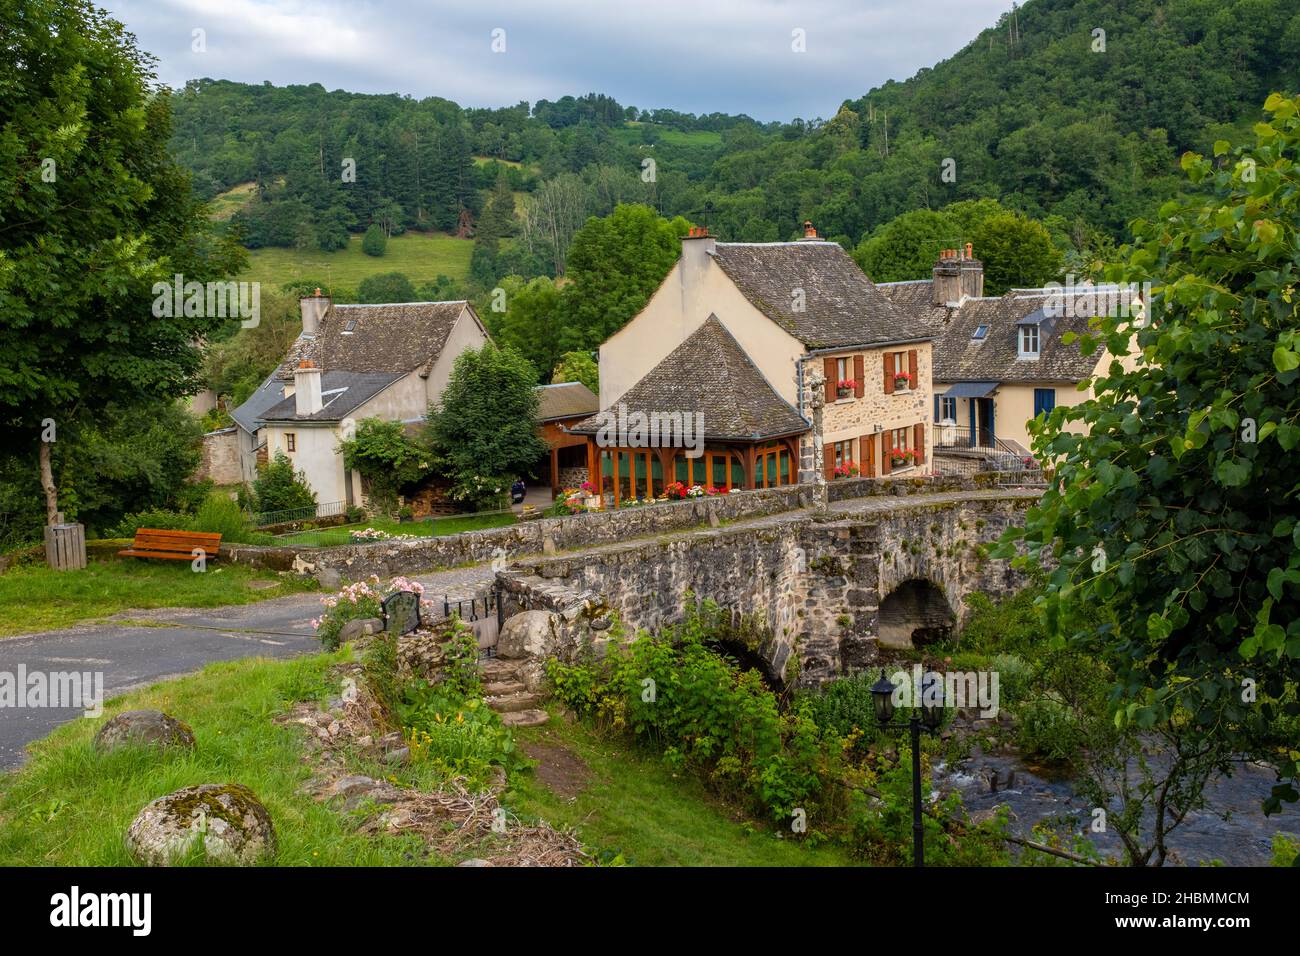 Antiguo puente de piedra del Camino de Santiago en el centro de Francia, tomado en una tarde de verano parcialmente nublado cerca del valle del río Lot, sin gente Foto de stock